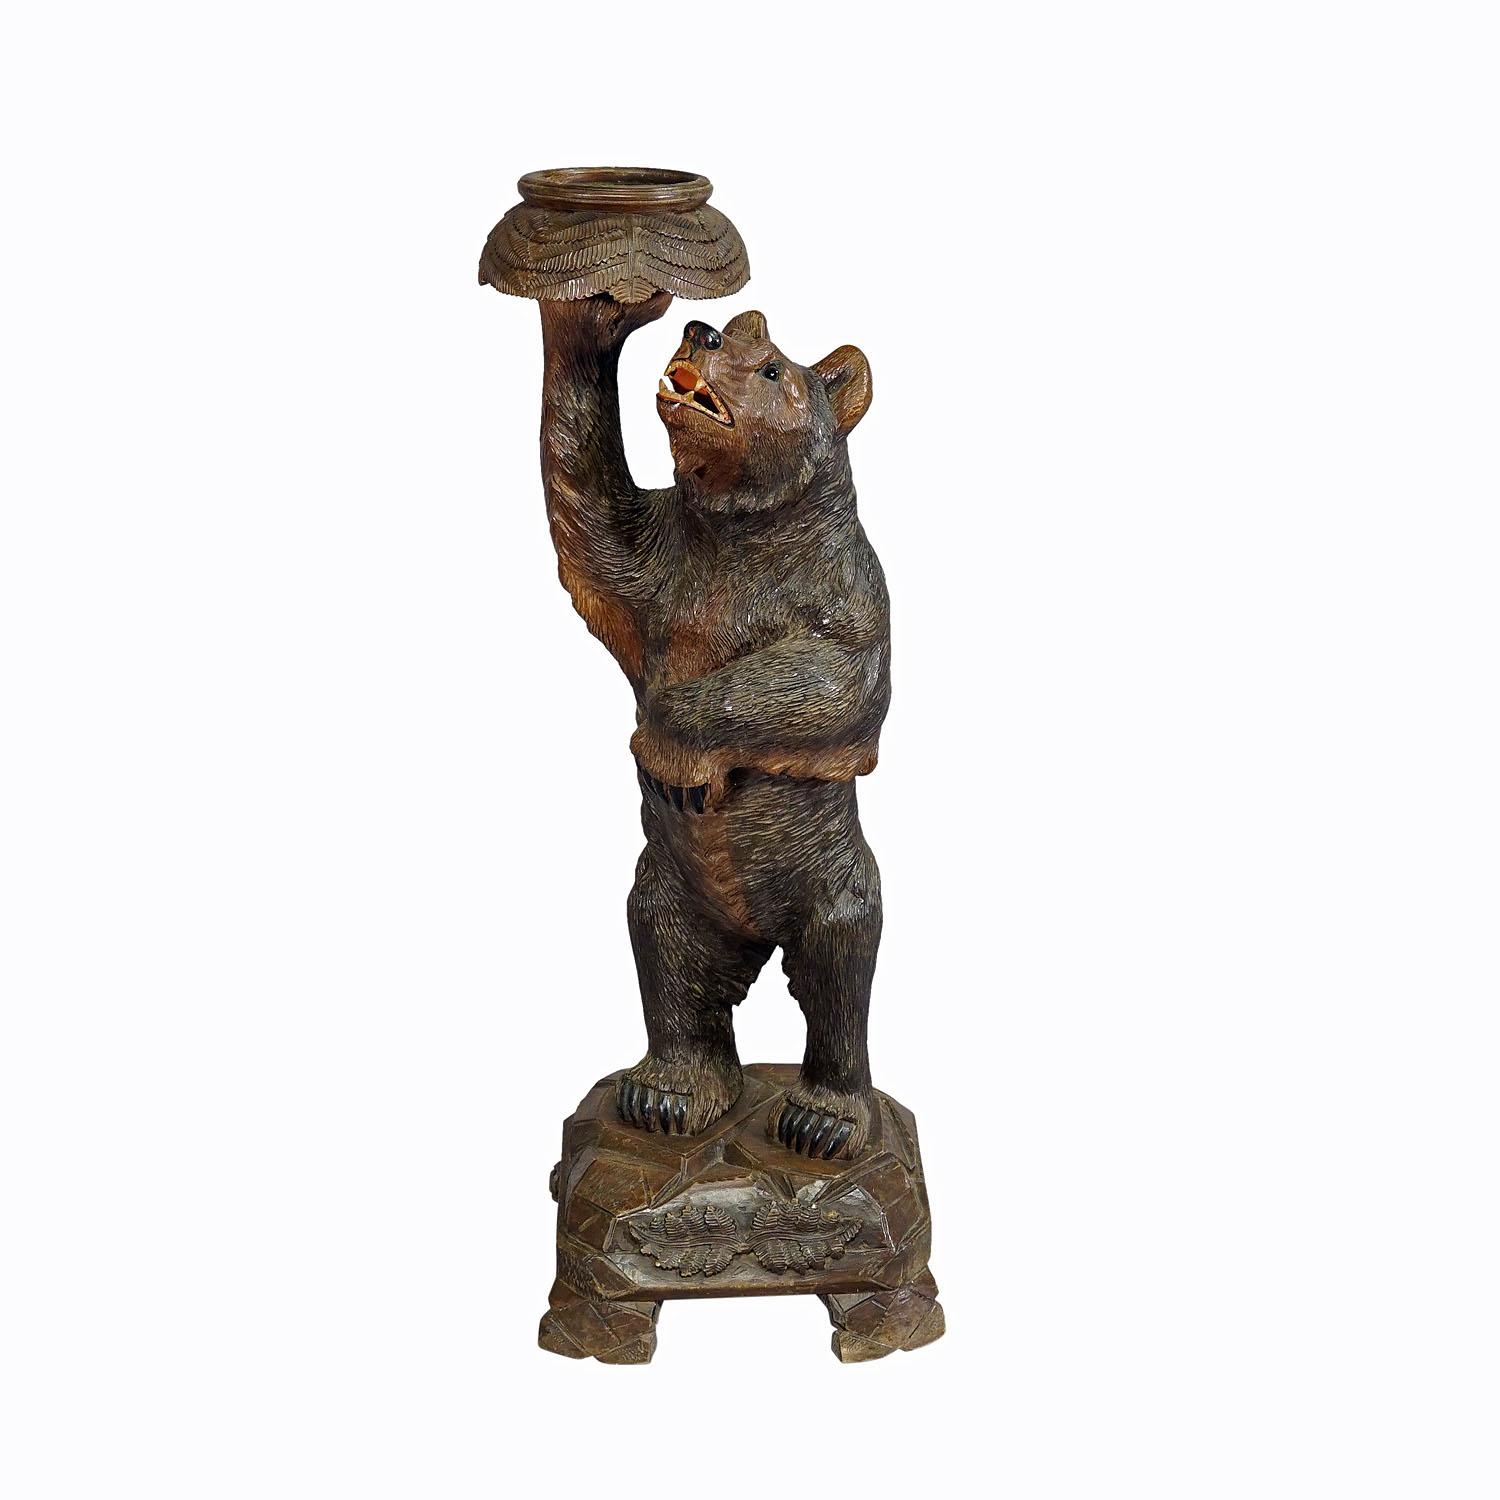 Grand porte-fleurs en bois en forme d'ours de la forêt noire, sculpté à la main à Brienz dans les années 1900

Statue antique d'un ours debout sur un socle de fleurs. En bois de tilleul, finement sculpté à la main avec des détails naturalistes à